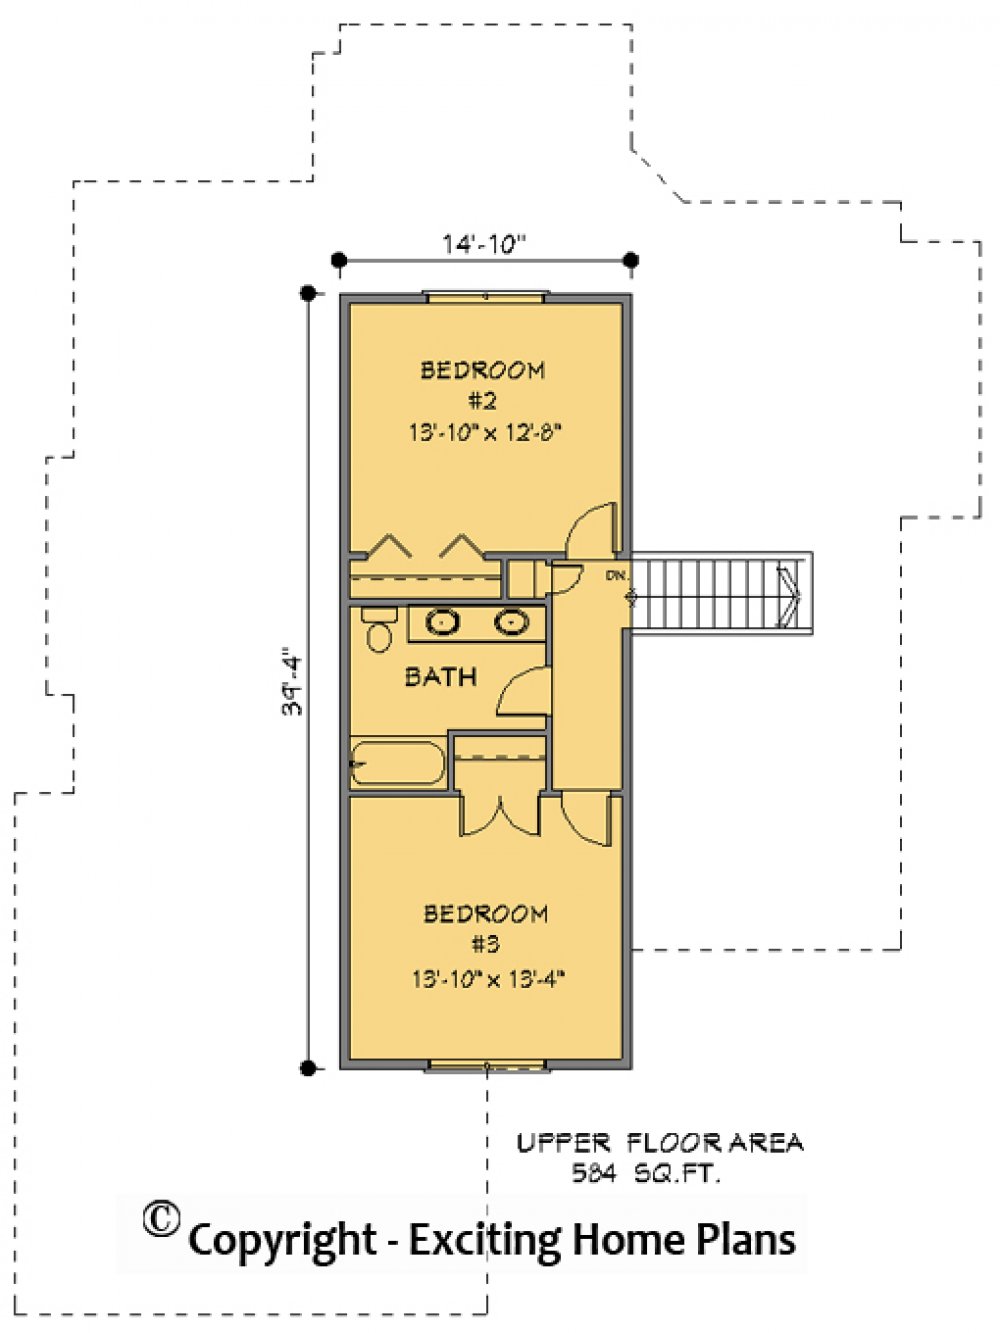 House Plan E1286-10 Upper Floor